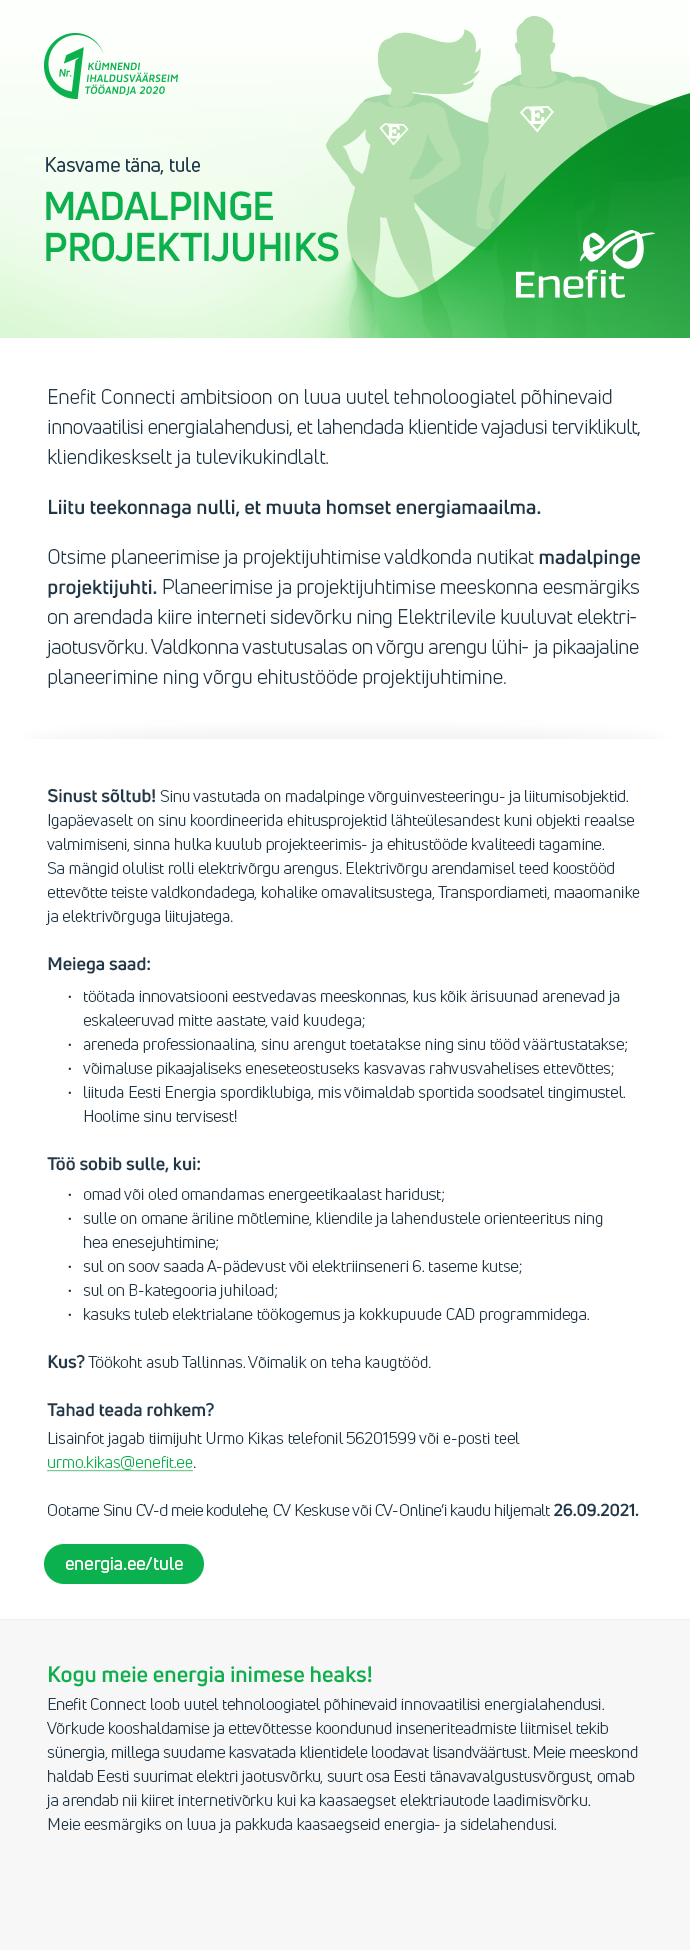 Eesti Energia AS MADALPINGE PROJEKTIJUHT TALLINN